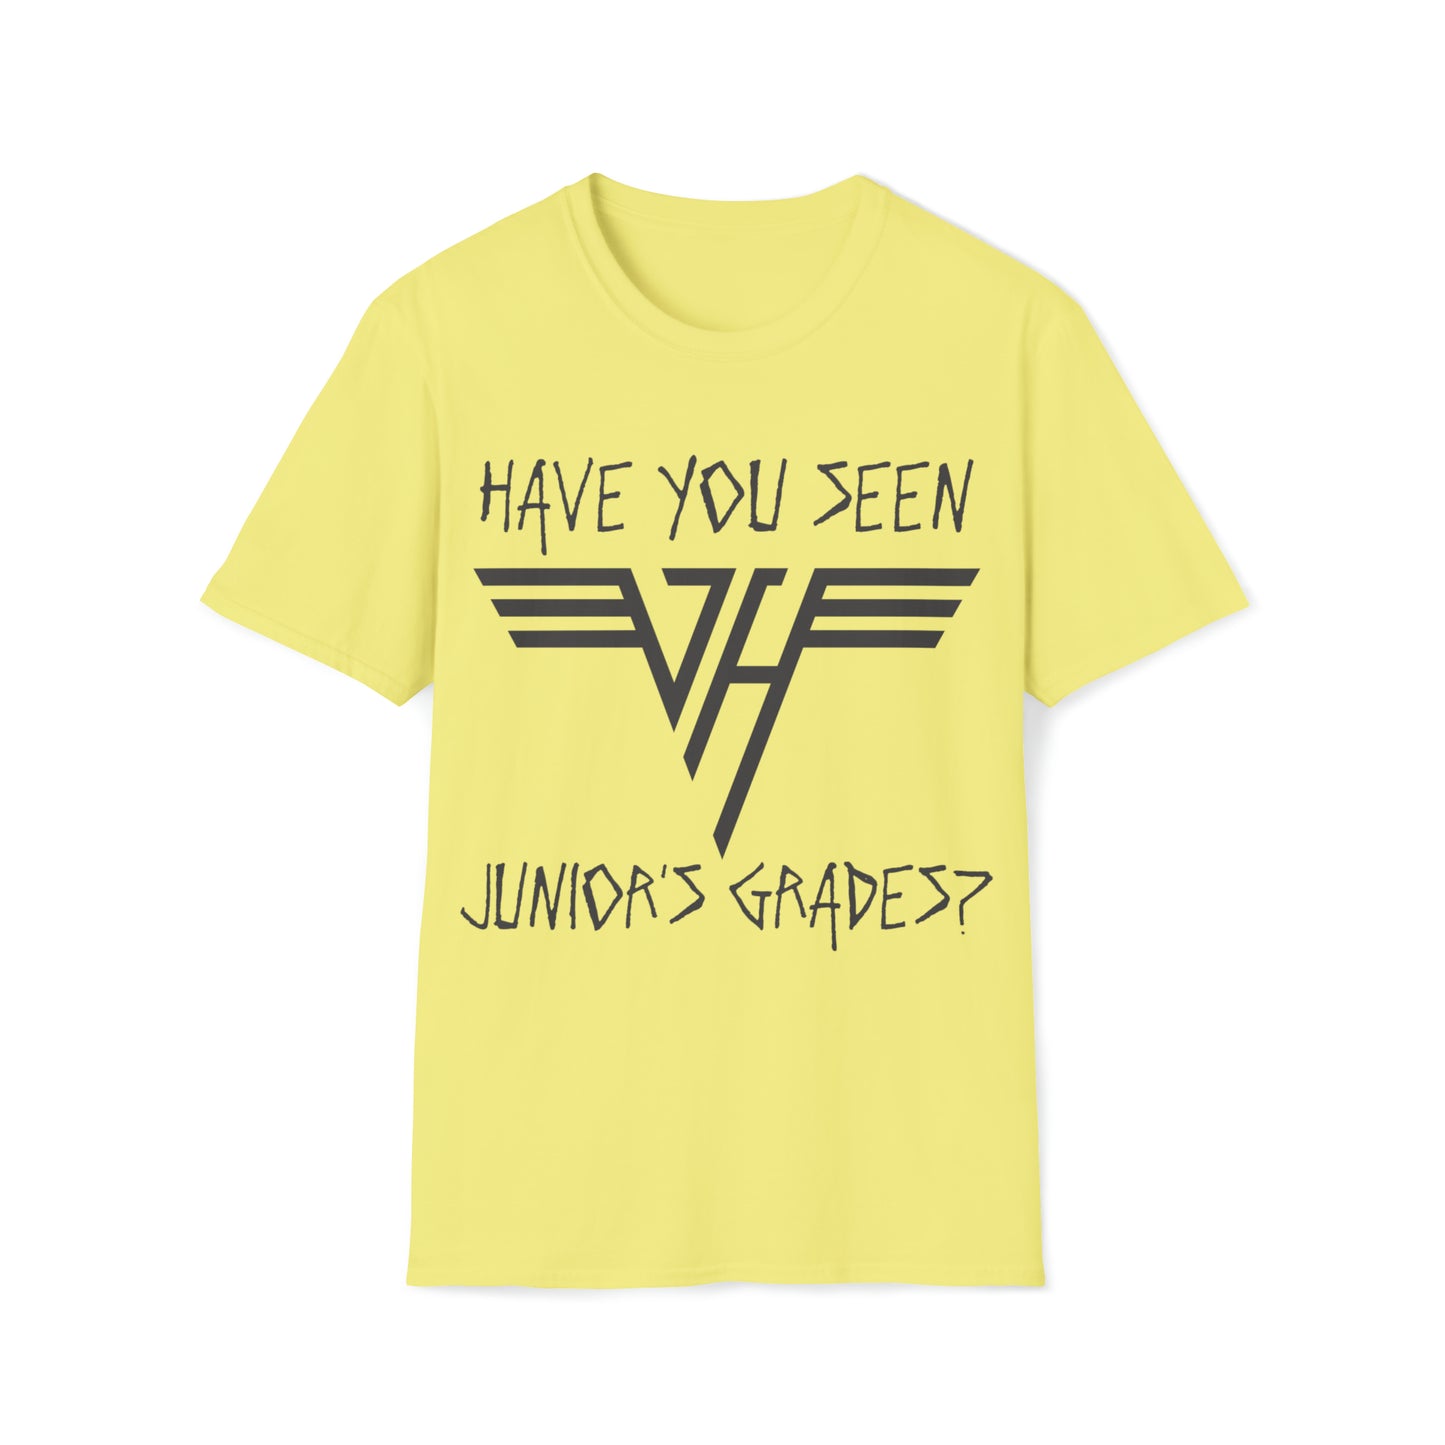 Van Halen "Have You Seen Junior's Grades?" Tee (8 Colors)